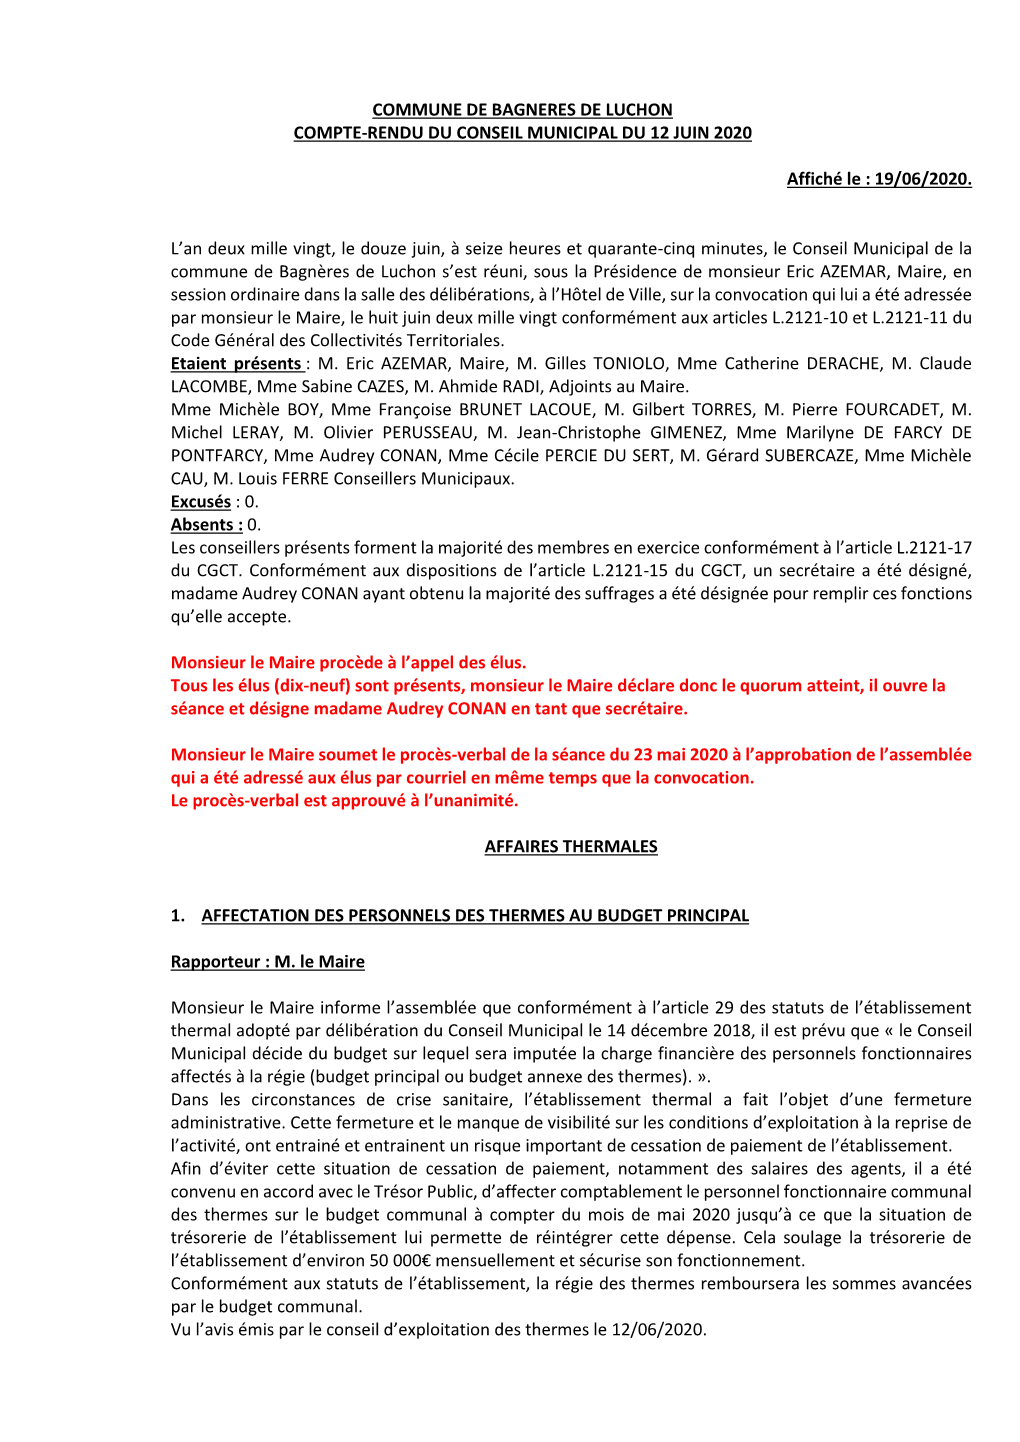 Commune De Bagneres De Luchon Compte-Rendu Du Conseil Municipal Du 12 Juin 2020